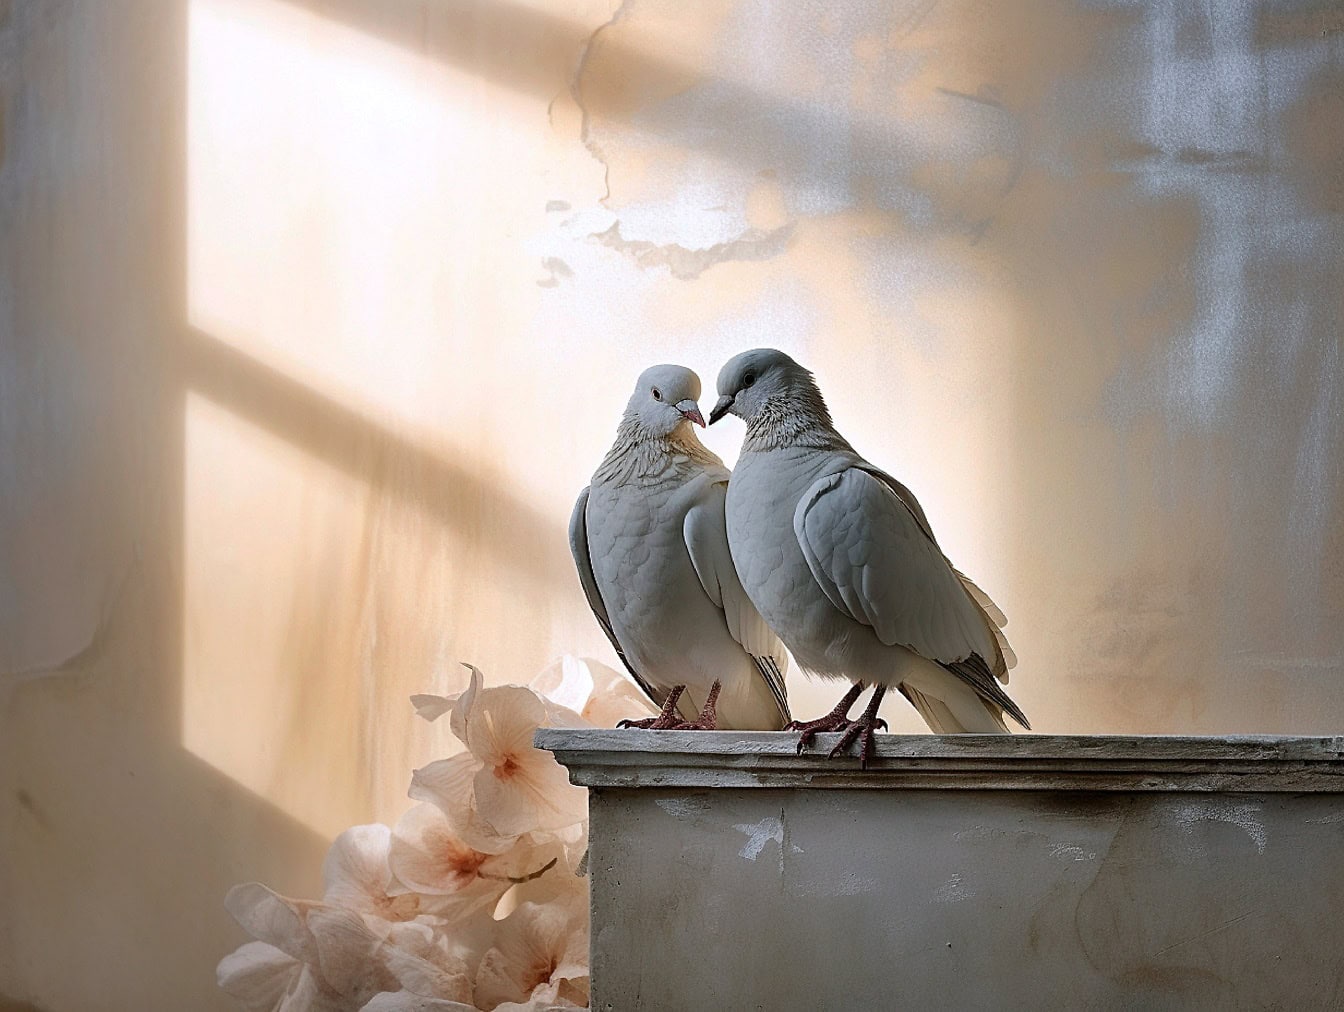 Romantisches Set mit weißer Taube und Taube, die im Halbschatten stehen, mit pastellfarbenen Blumen im Hintergrund